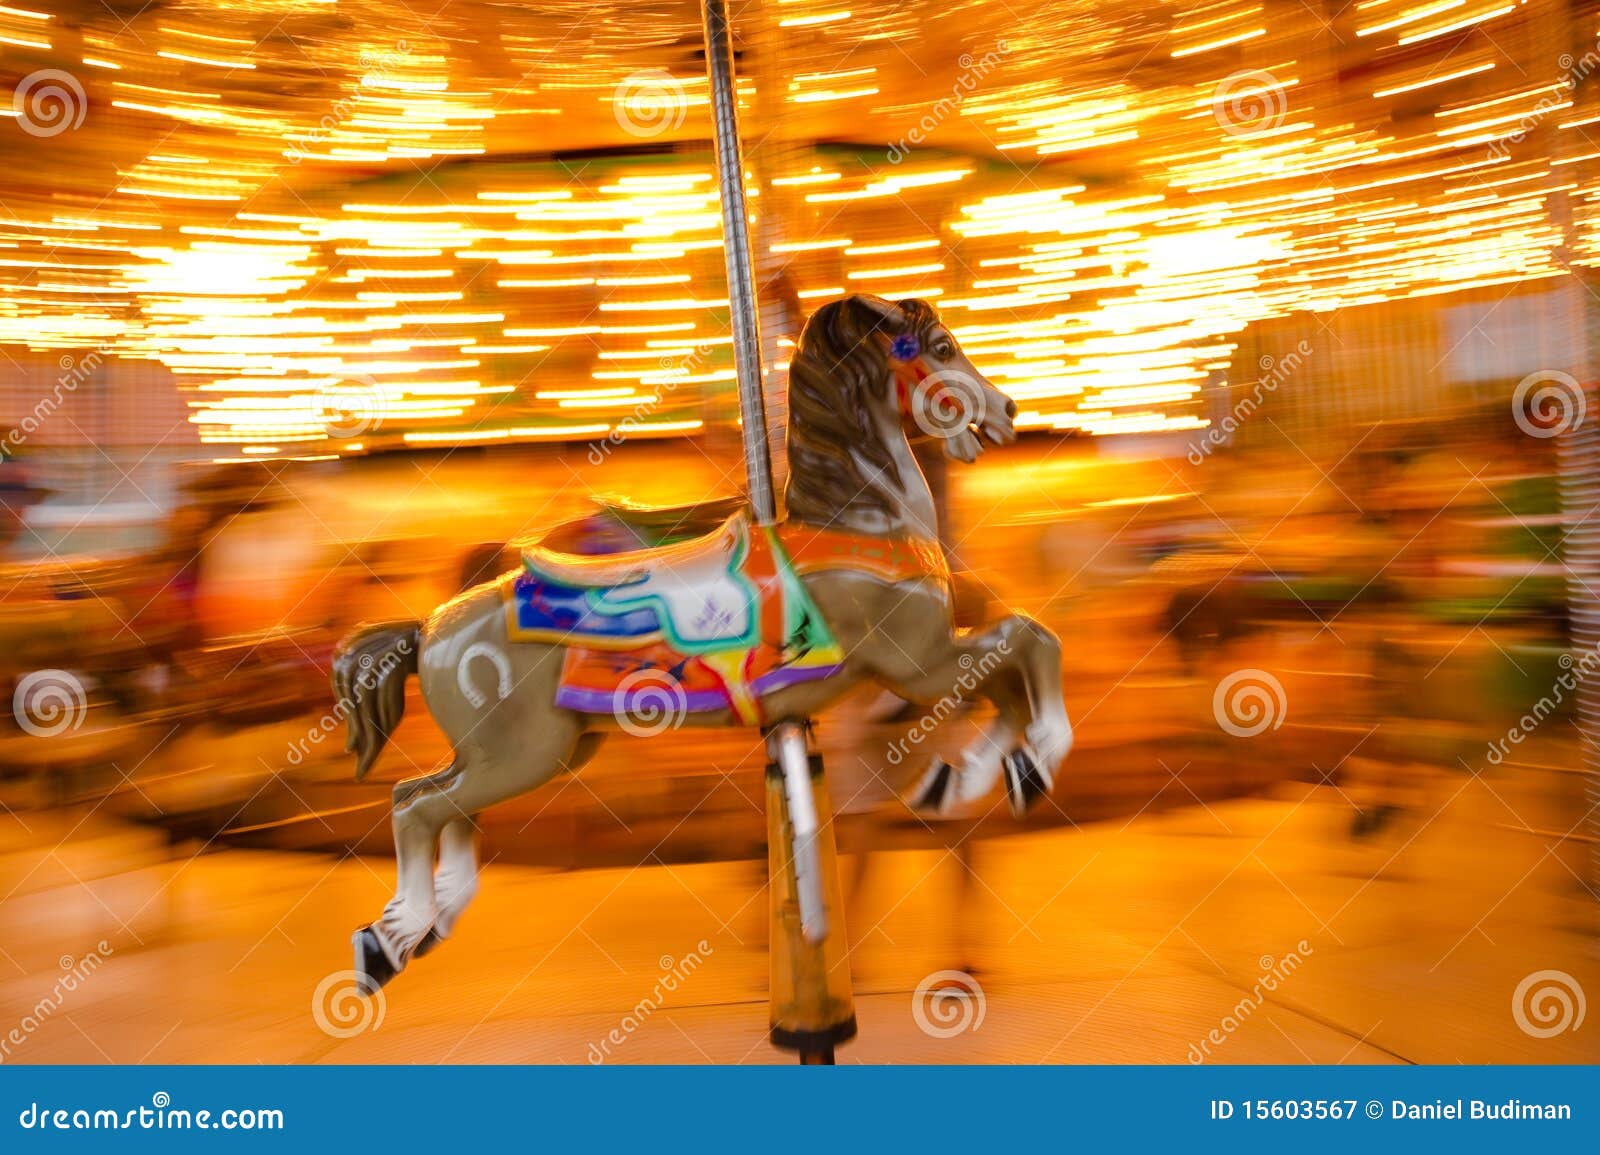 carousel horse panning